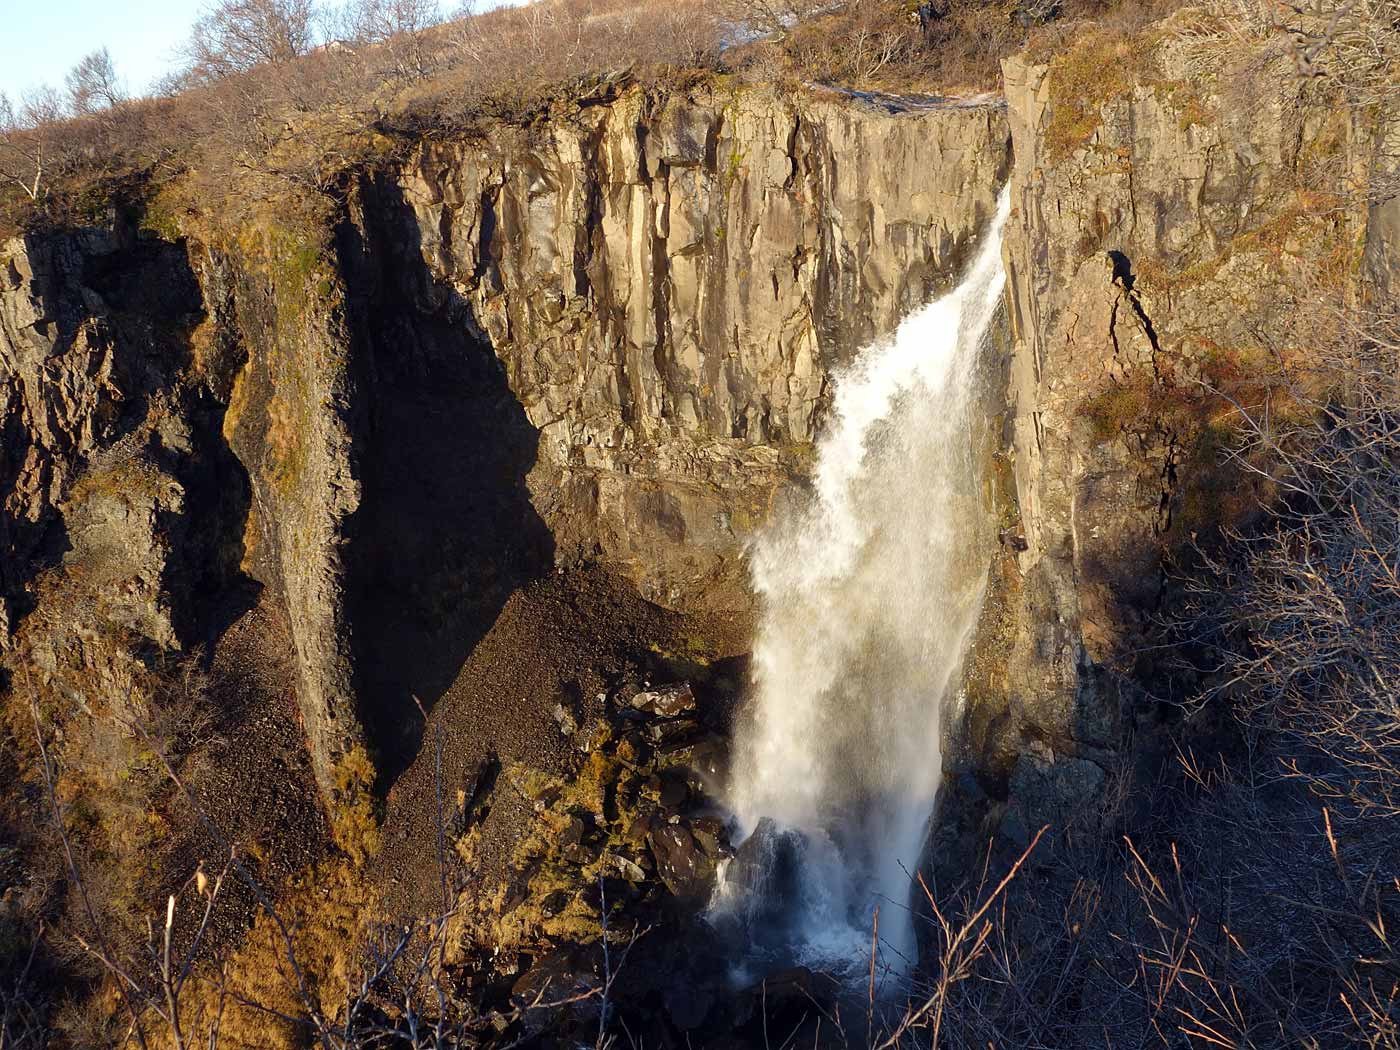 Skaftafell. A (wonderful) hike to Svartifoss waterfall. - ... <a href='http://www.world-of-waterfalls.com/iceland-hundafoss.html' target='_blank' class='linksnormal'>Hundafoss</a>. (16 November 2013)